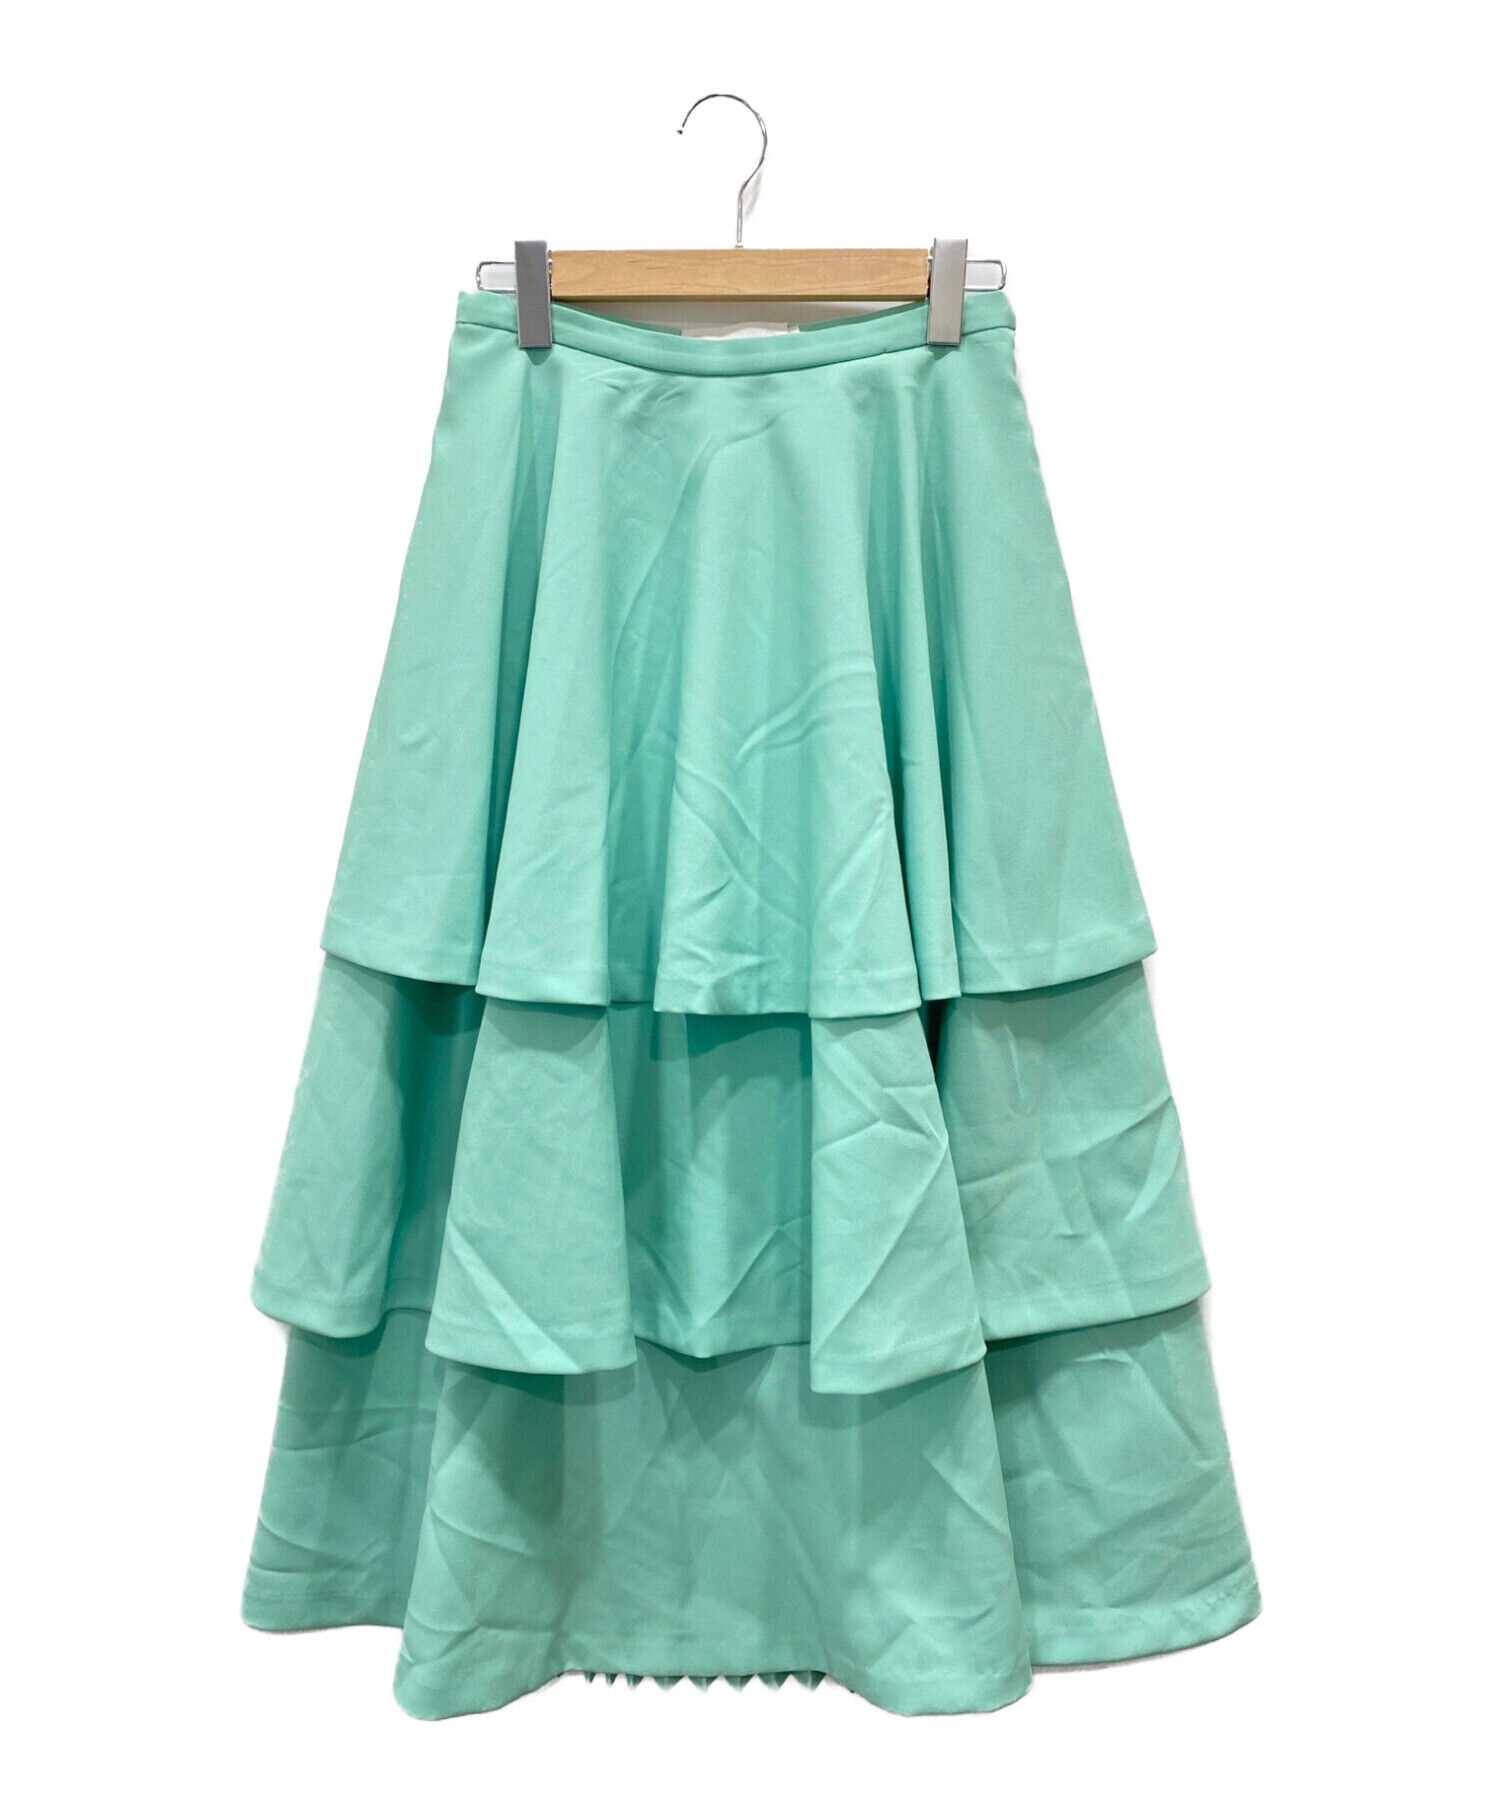 CLEANA クリーナ プリーツスカート サイズ2 - www.bleachcolorgrading.com